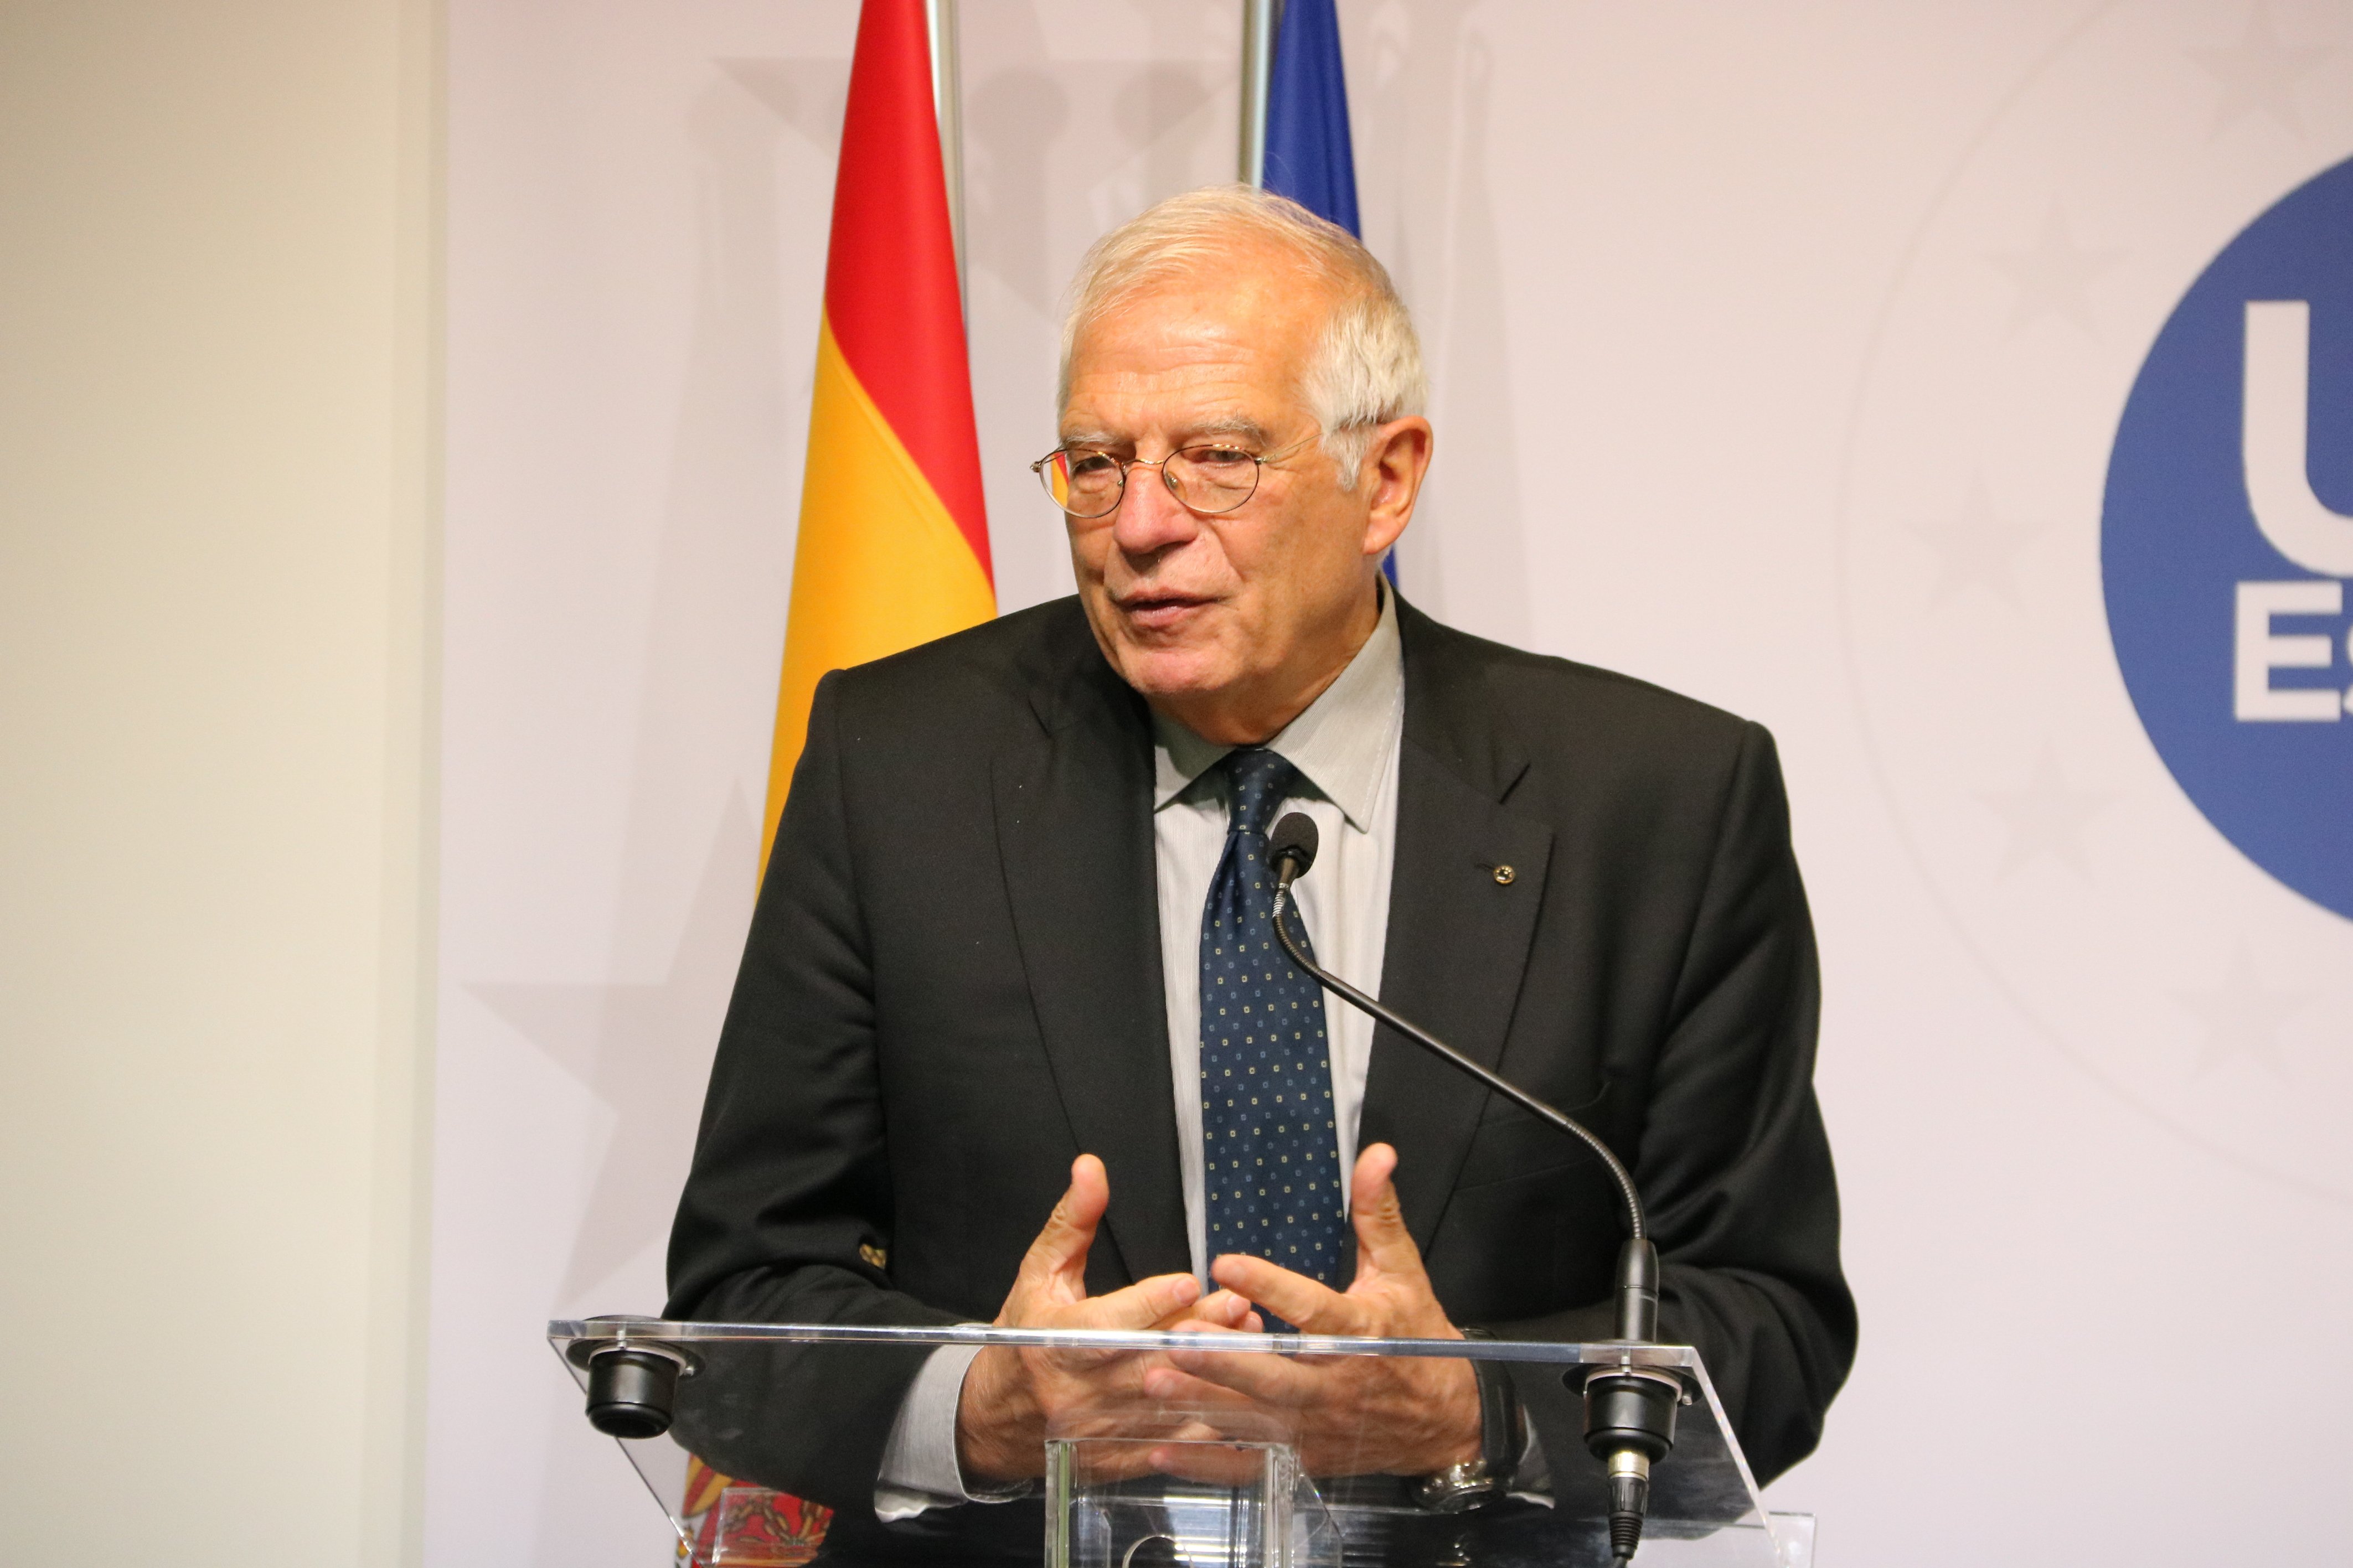 Los dos errores fatales de Borrell, según Margallo